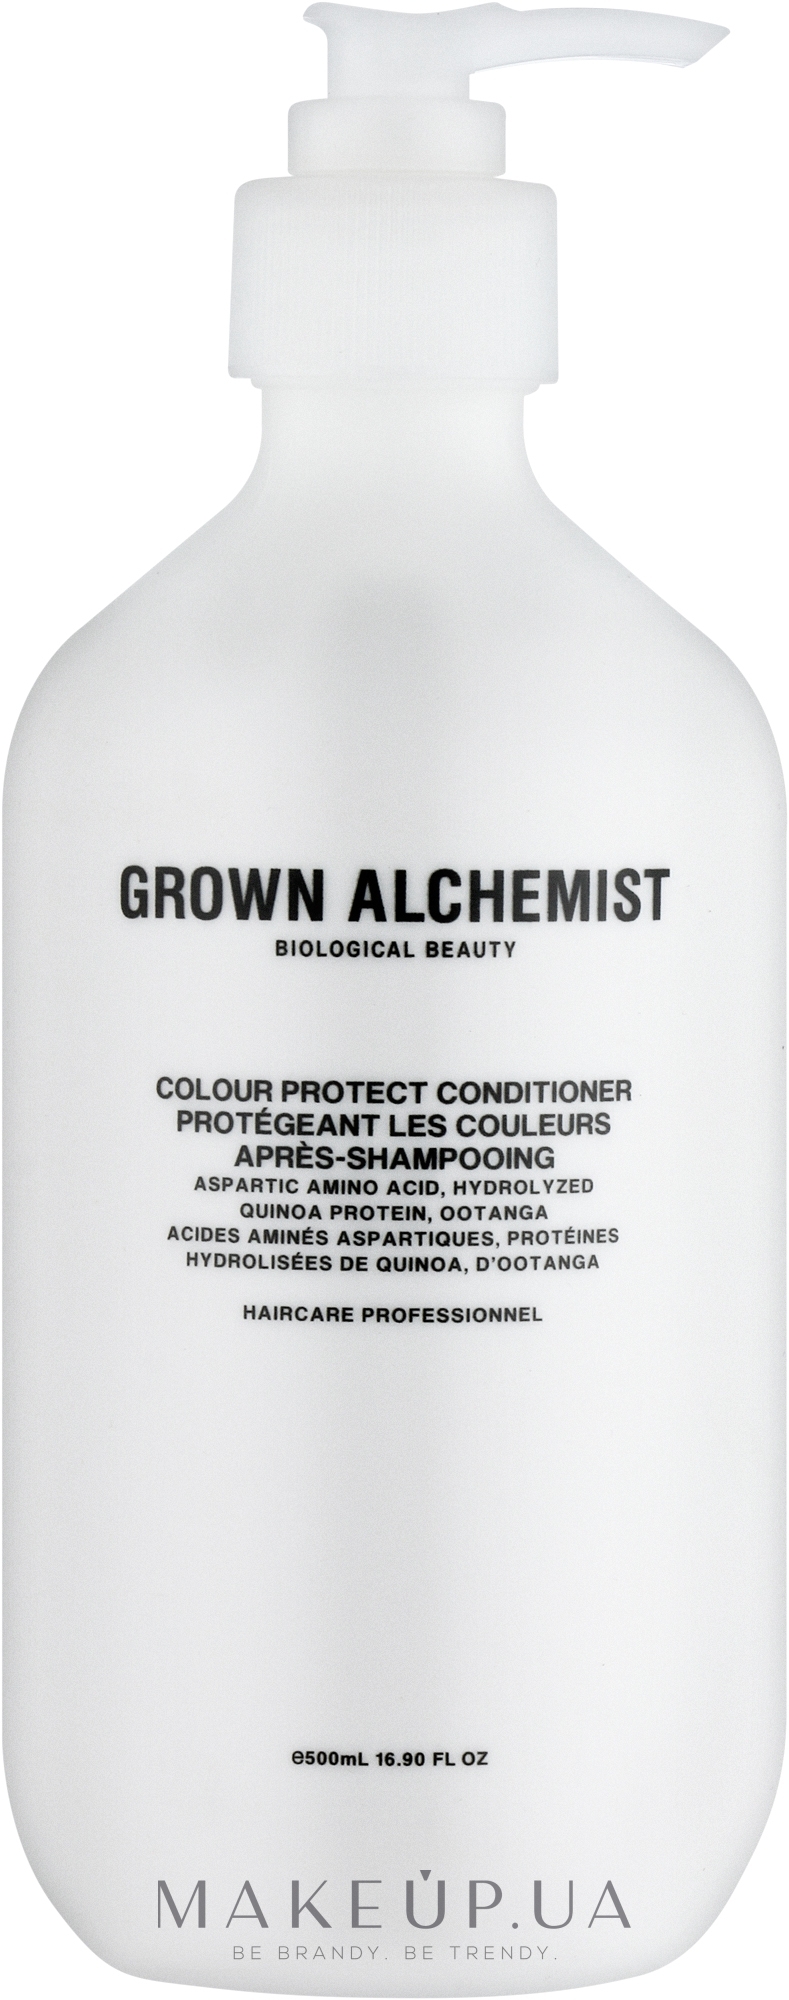 Кондиционер для защиты цвета волос - Grown Alchemist Colour Protect Conditioner — фото 500ml